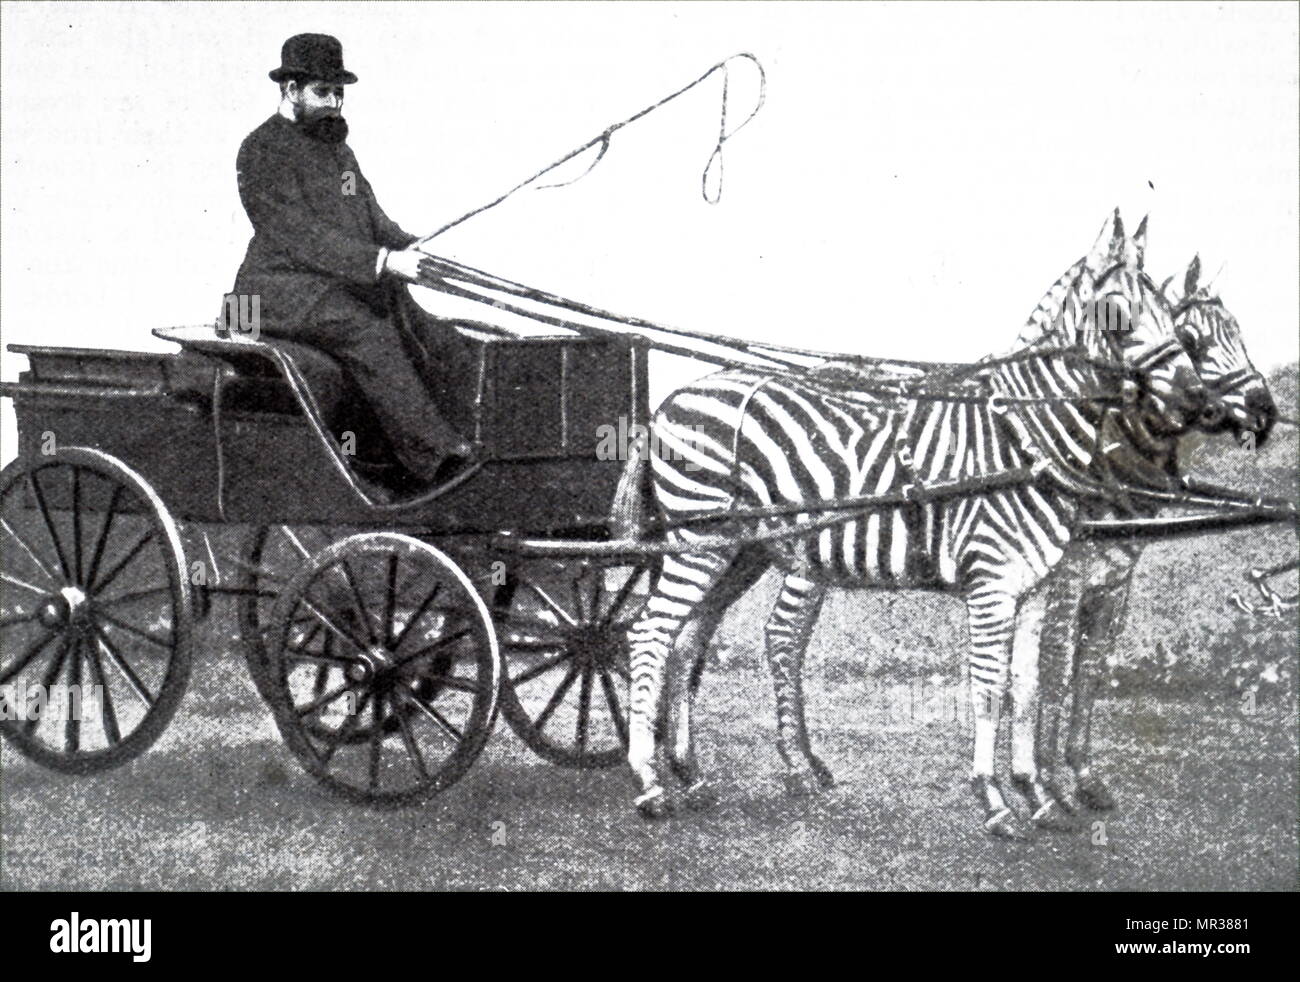 Foto von Lionel de Rothschild fahren eine Mannschaft der Zebras. Lionel de Rothschild (1808-1879) ein britischer Banker, Politiker und Philanthrop, war Mitglied der prominenten Rothschild banking Familie. Vom 19. Jahrhundert Stockfoto